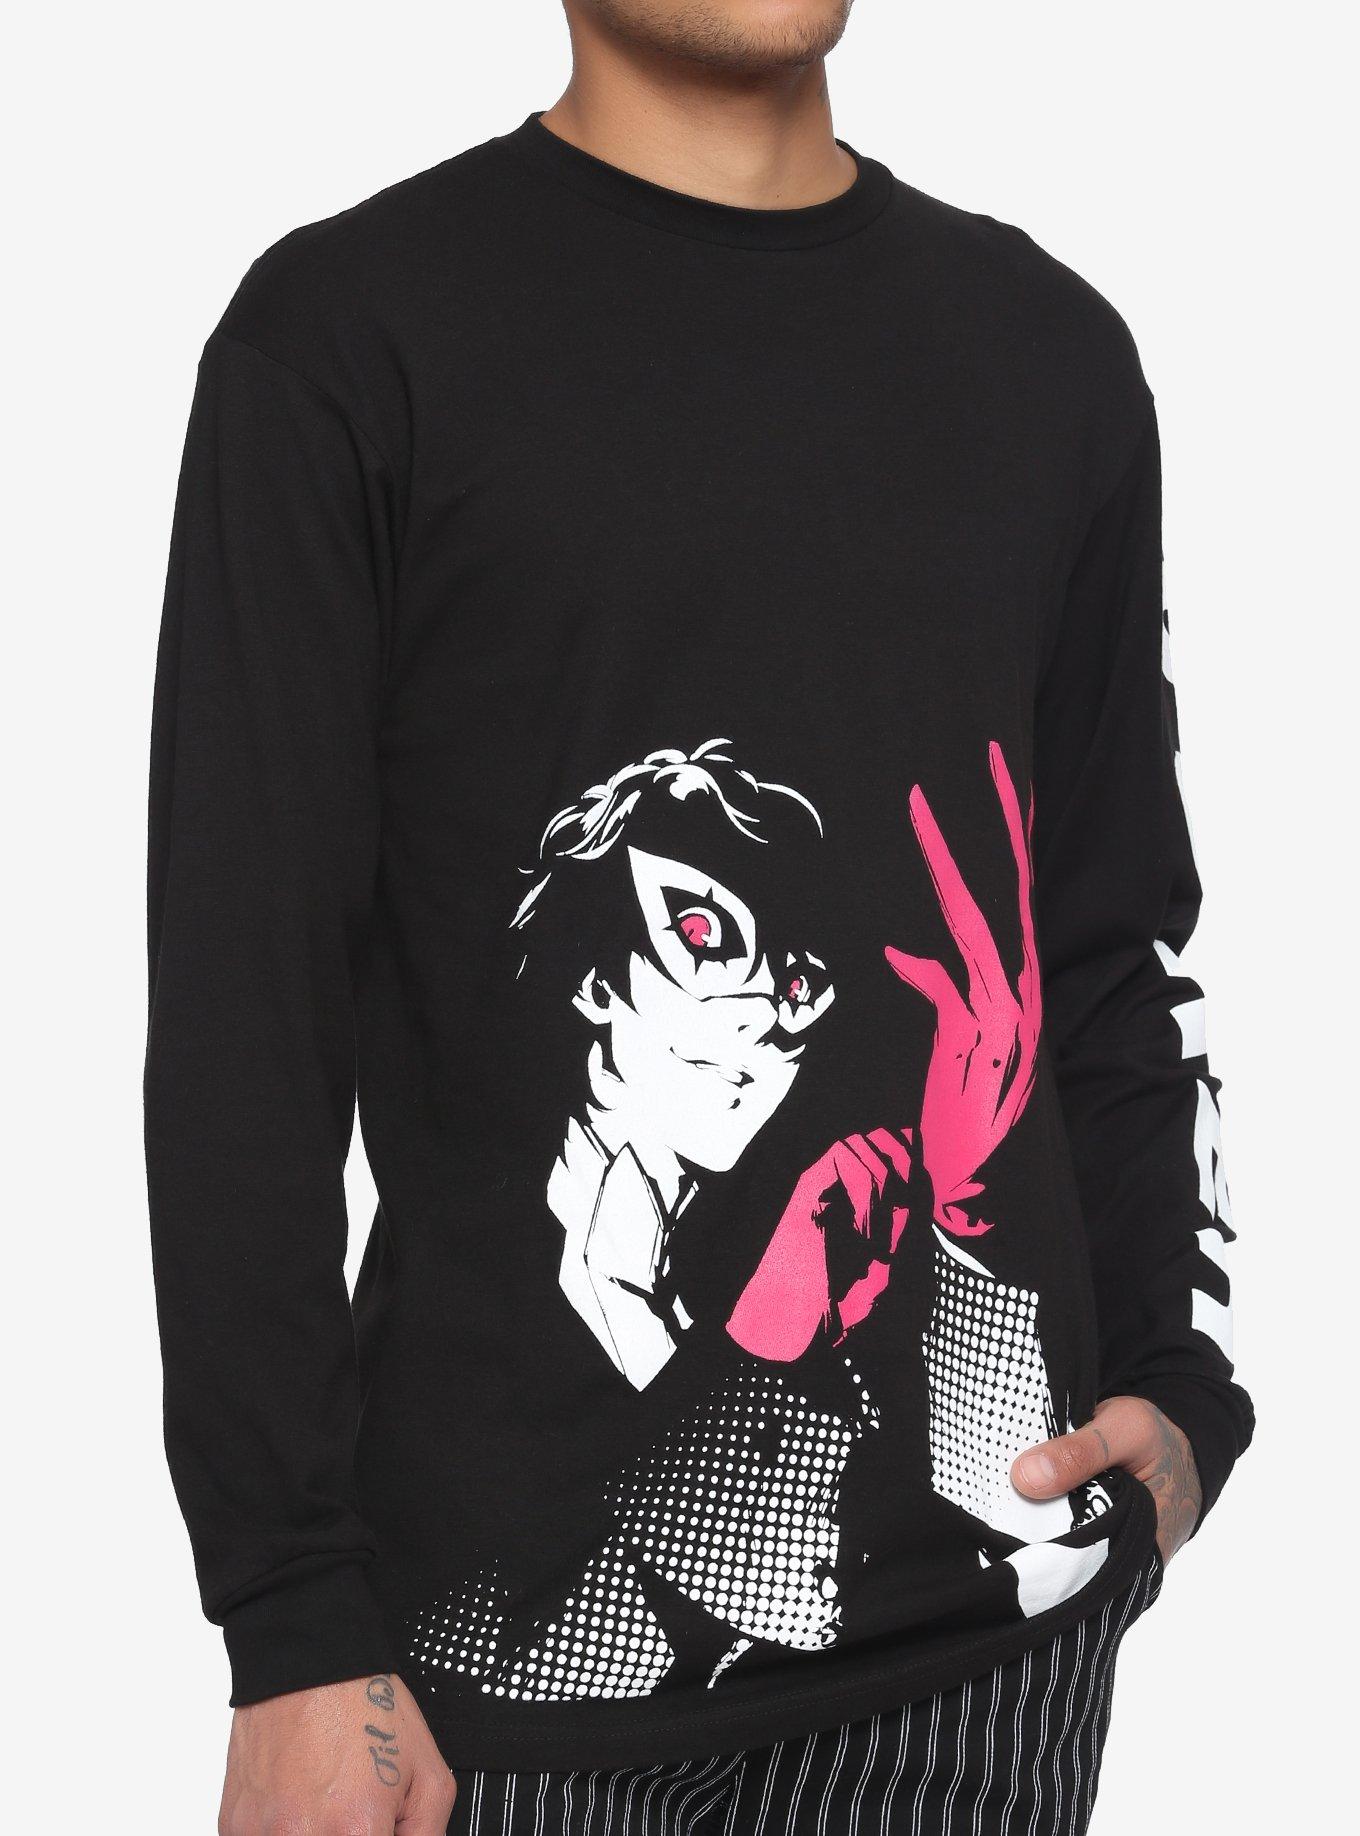 Persona Joker Long-Sleeve T-Shirt | Hot